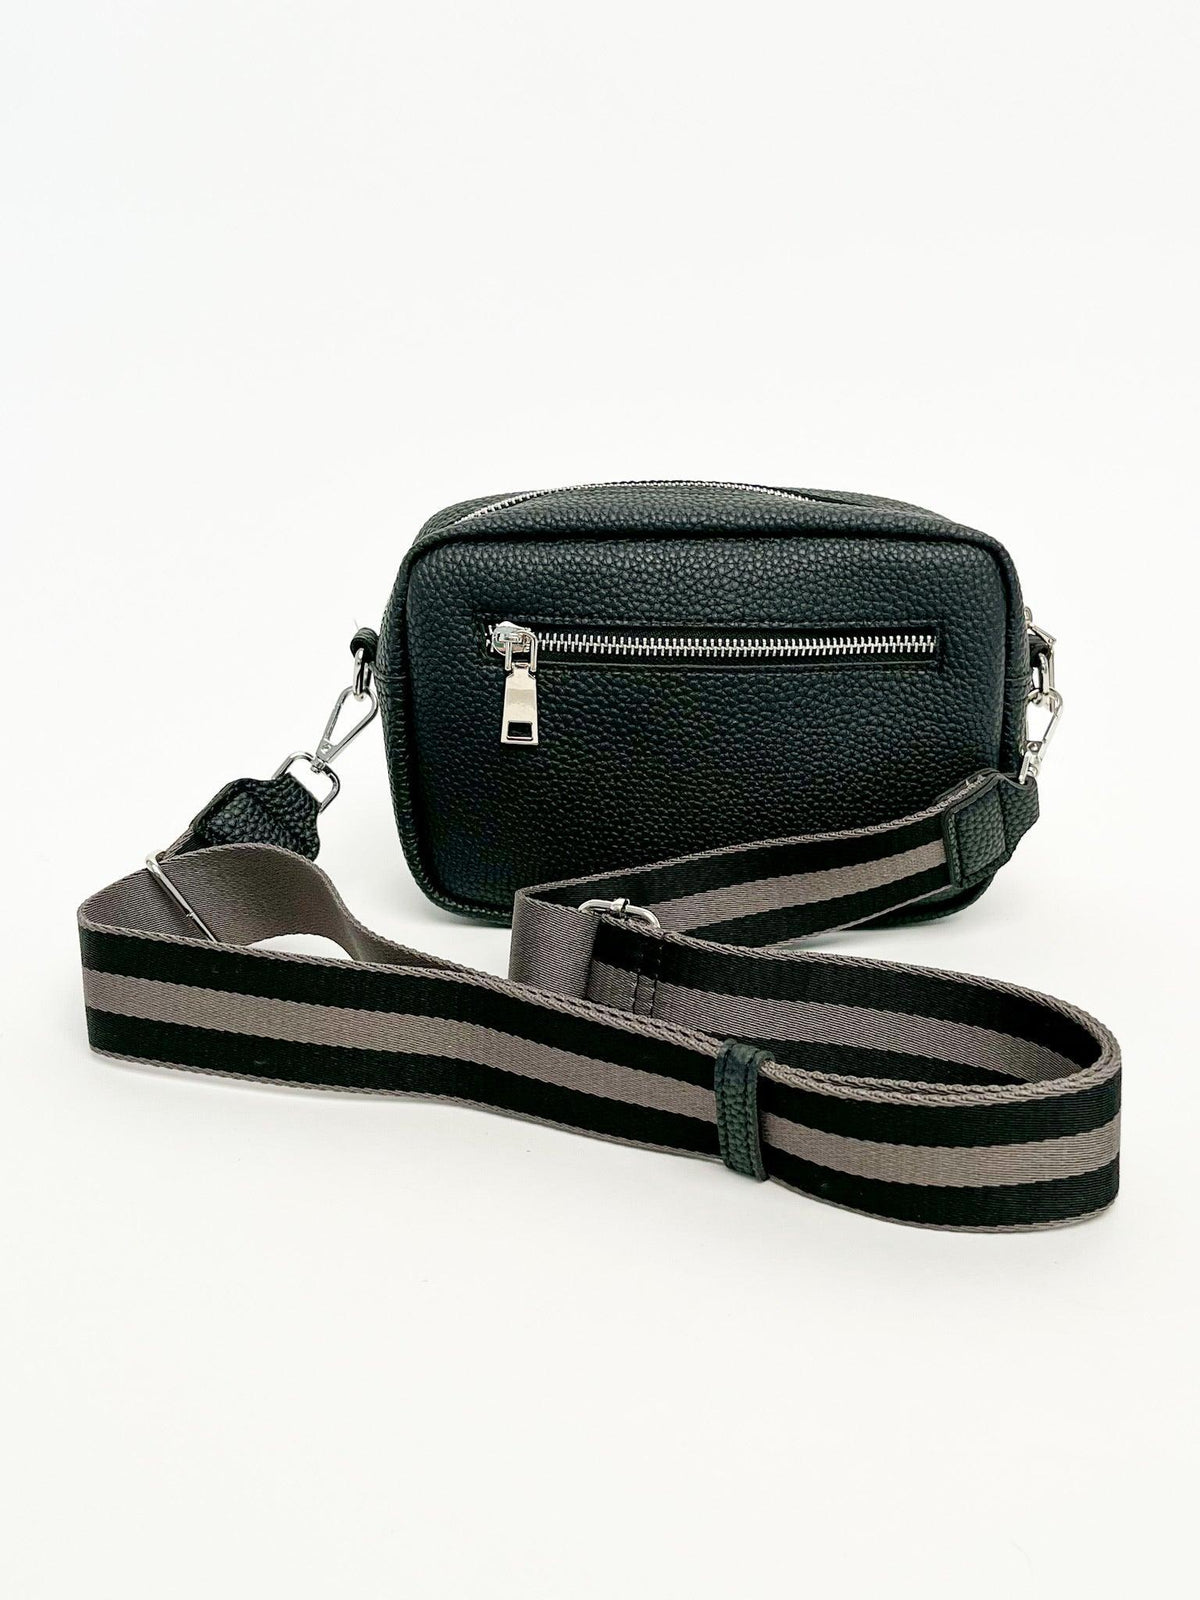 Black Camera Bag - SLS Wares